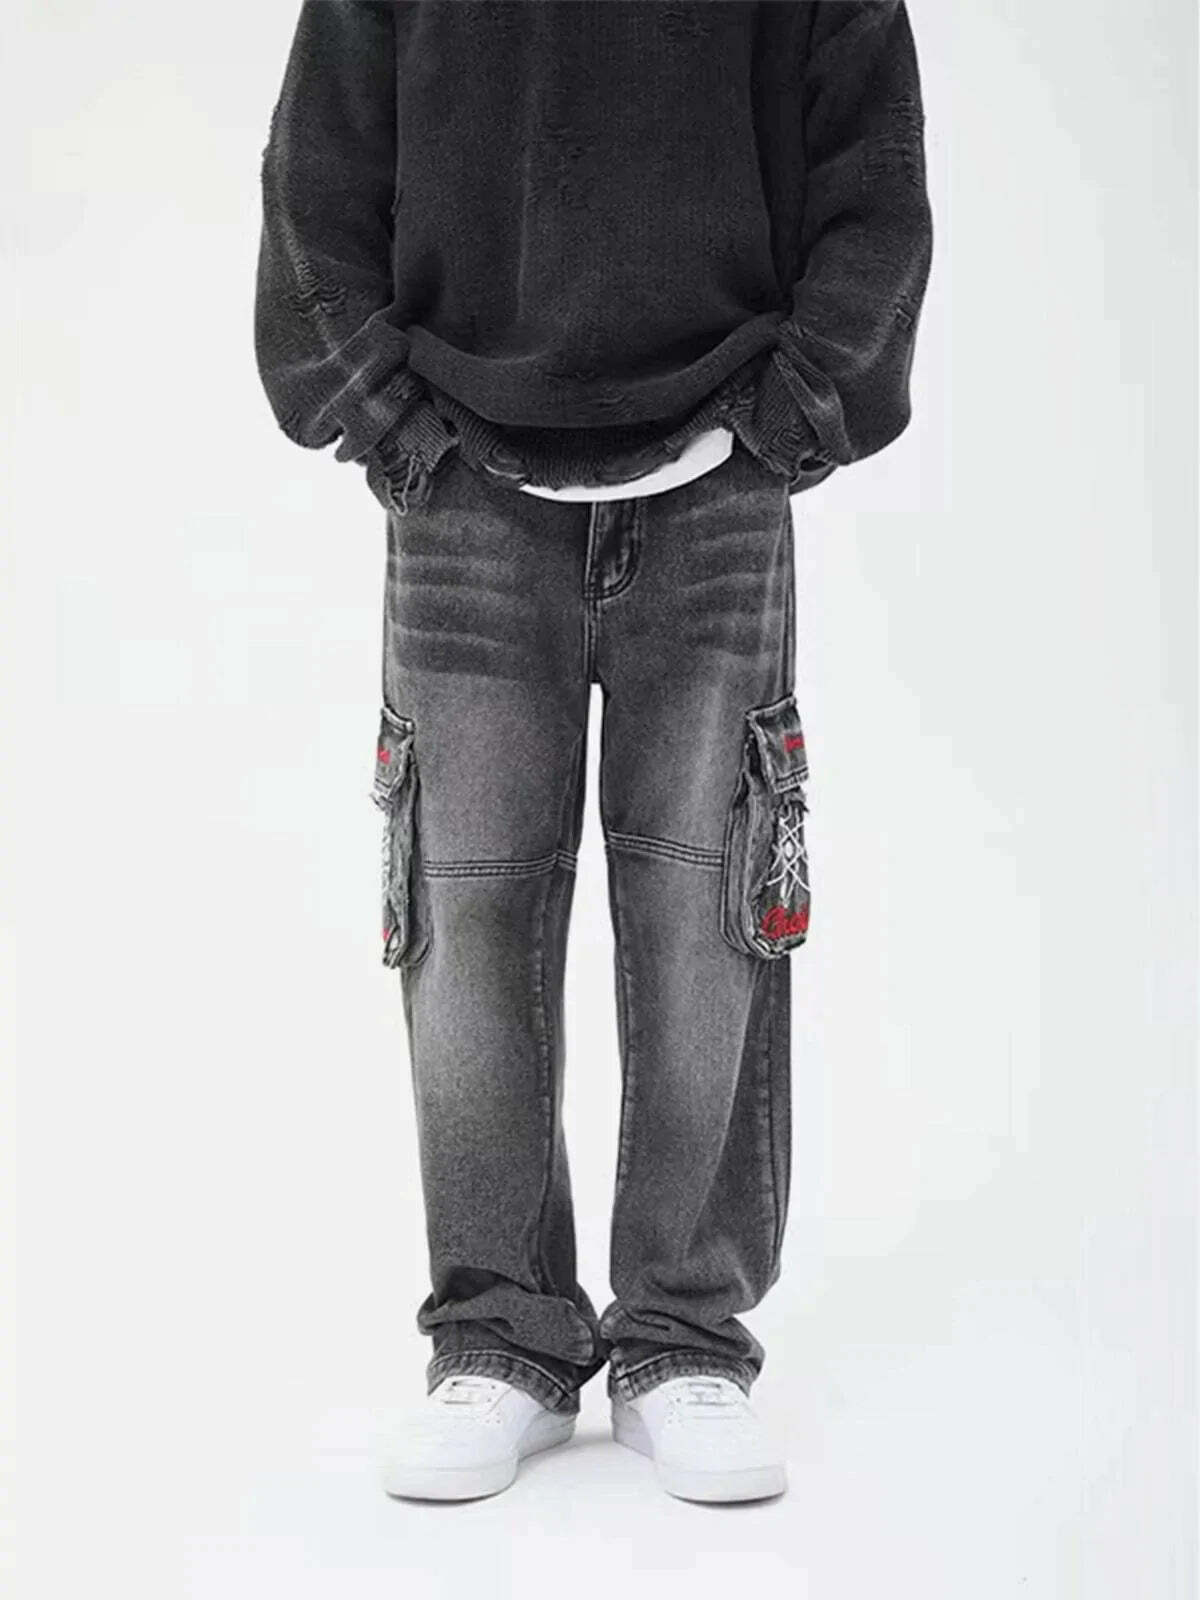 denim slim fit jeans sleek & edgy streetwear 6815